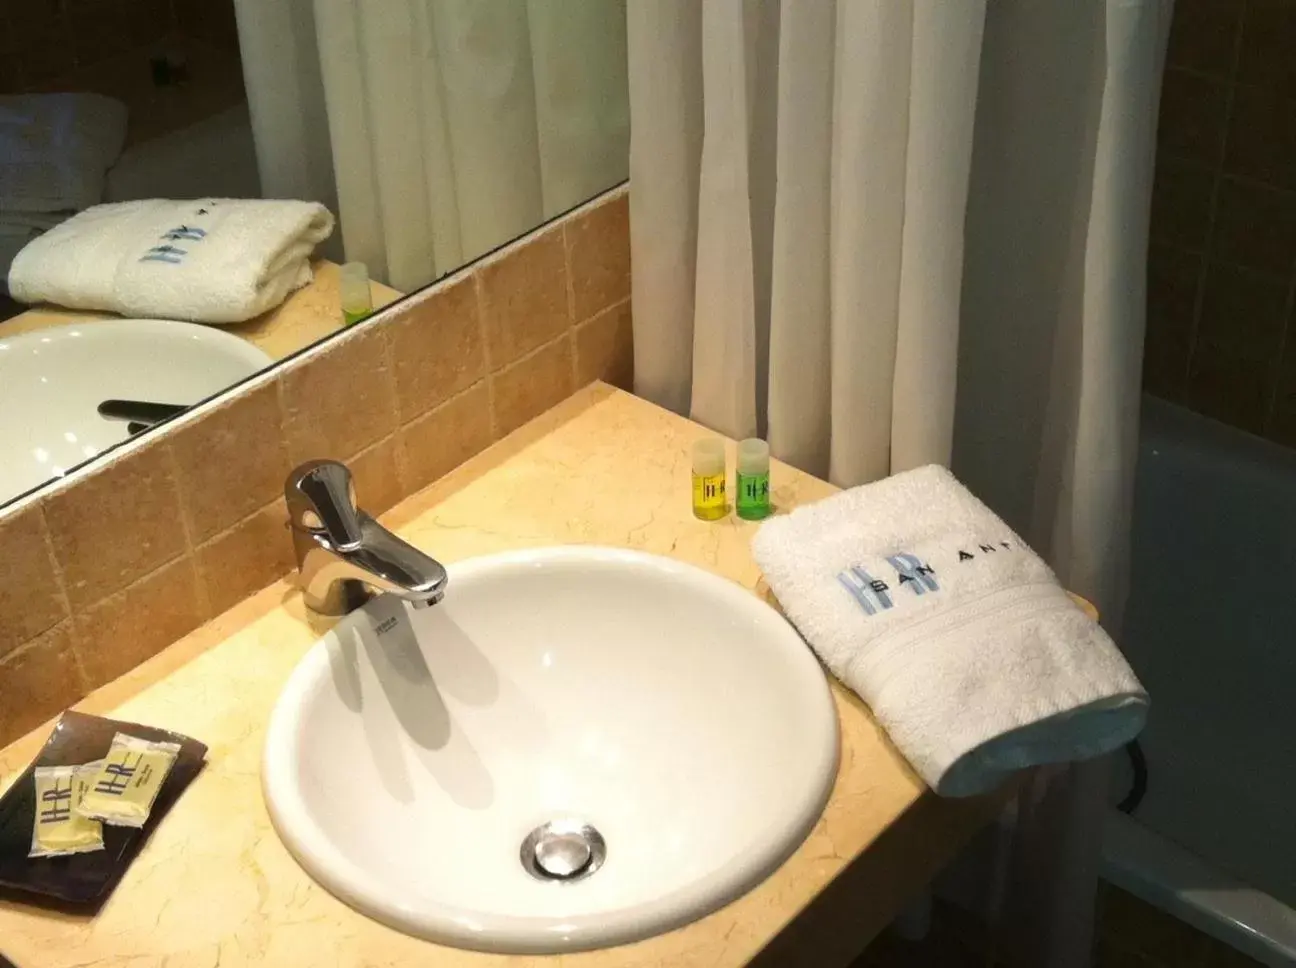 Bathroom in Hotel Restaurante San Anton